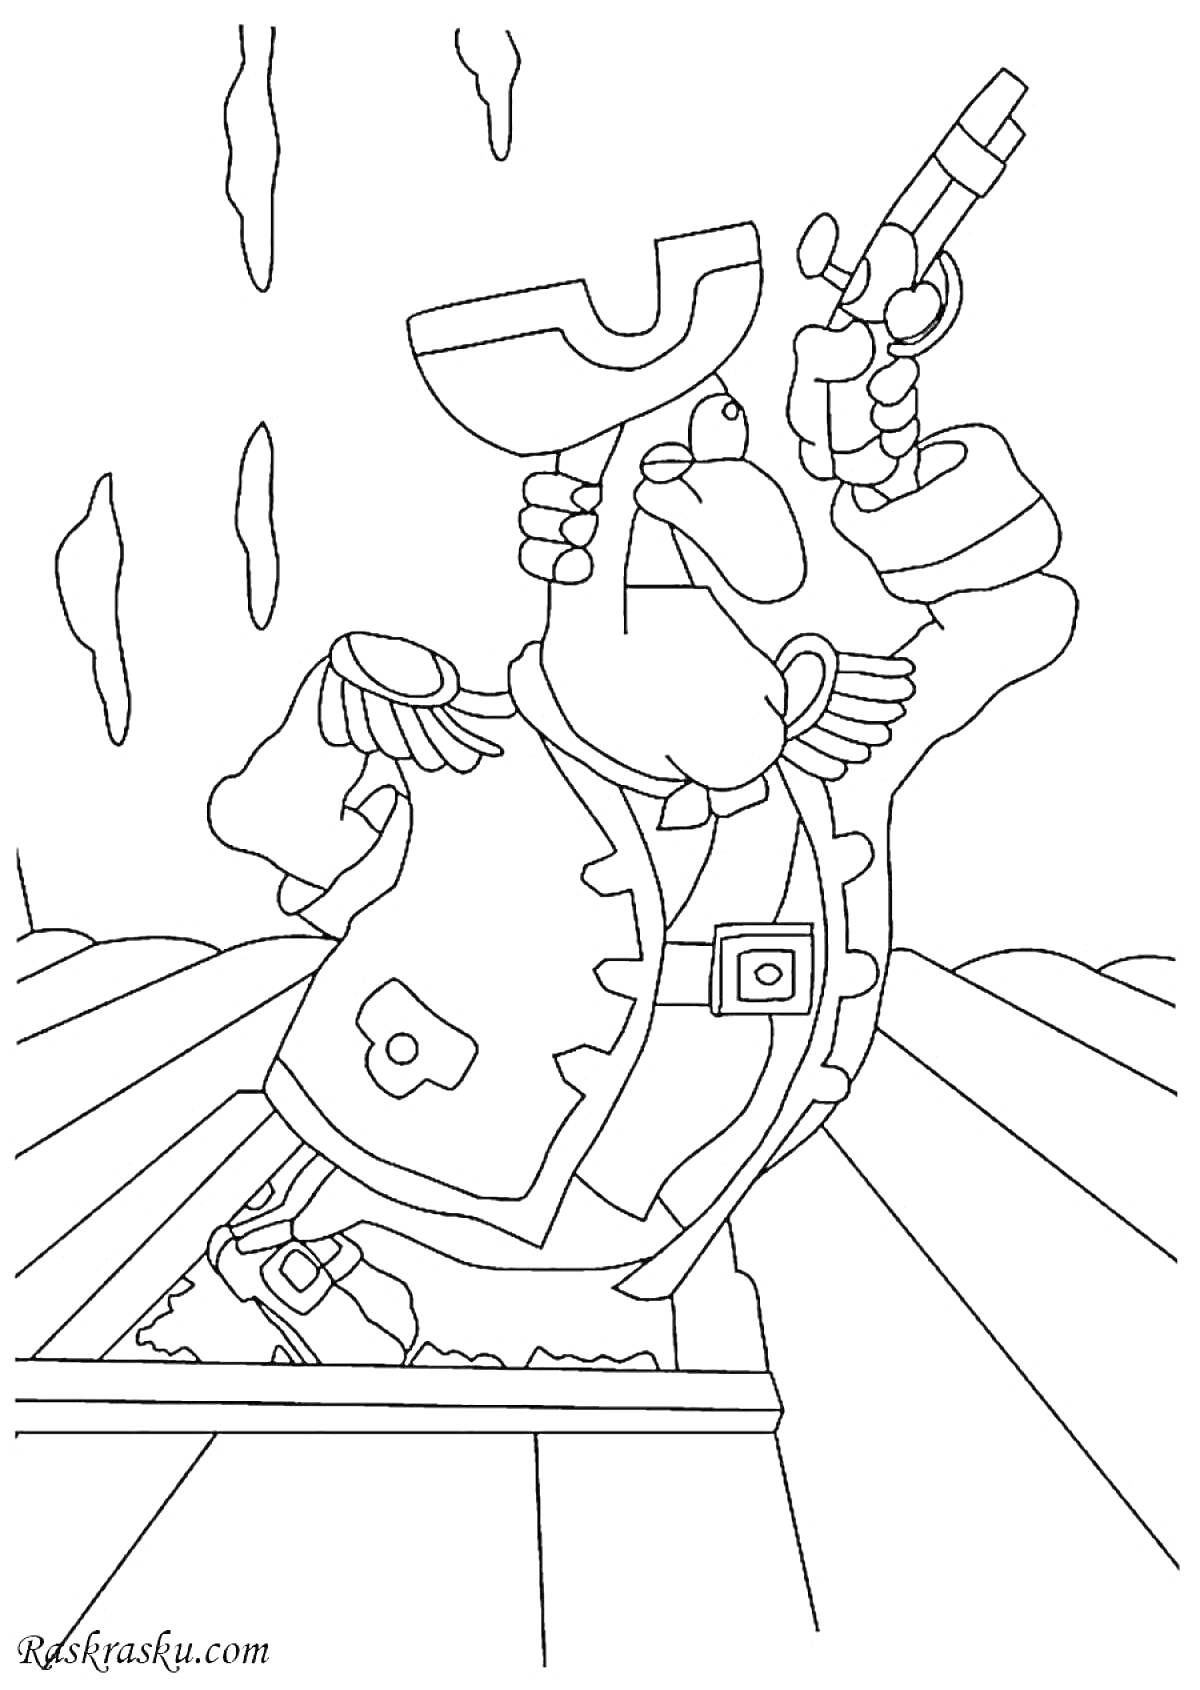 Доктор Ливси с мушкетом на палубе корабля, со шпагой в ножнах и поднятой вверх рукой.